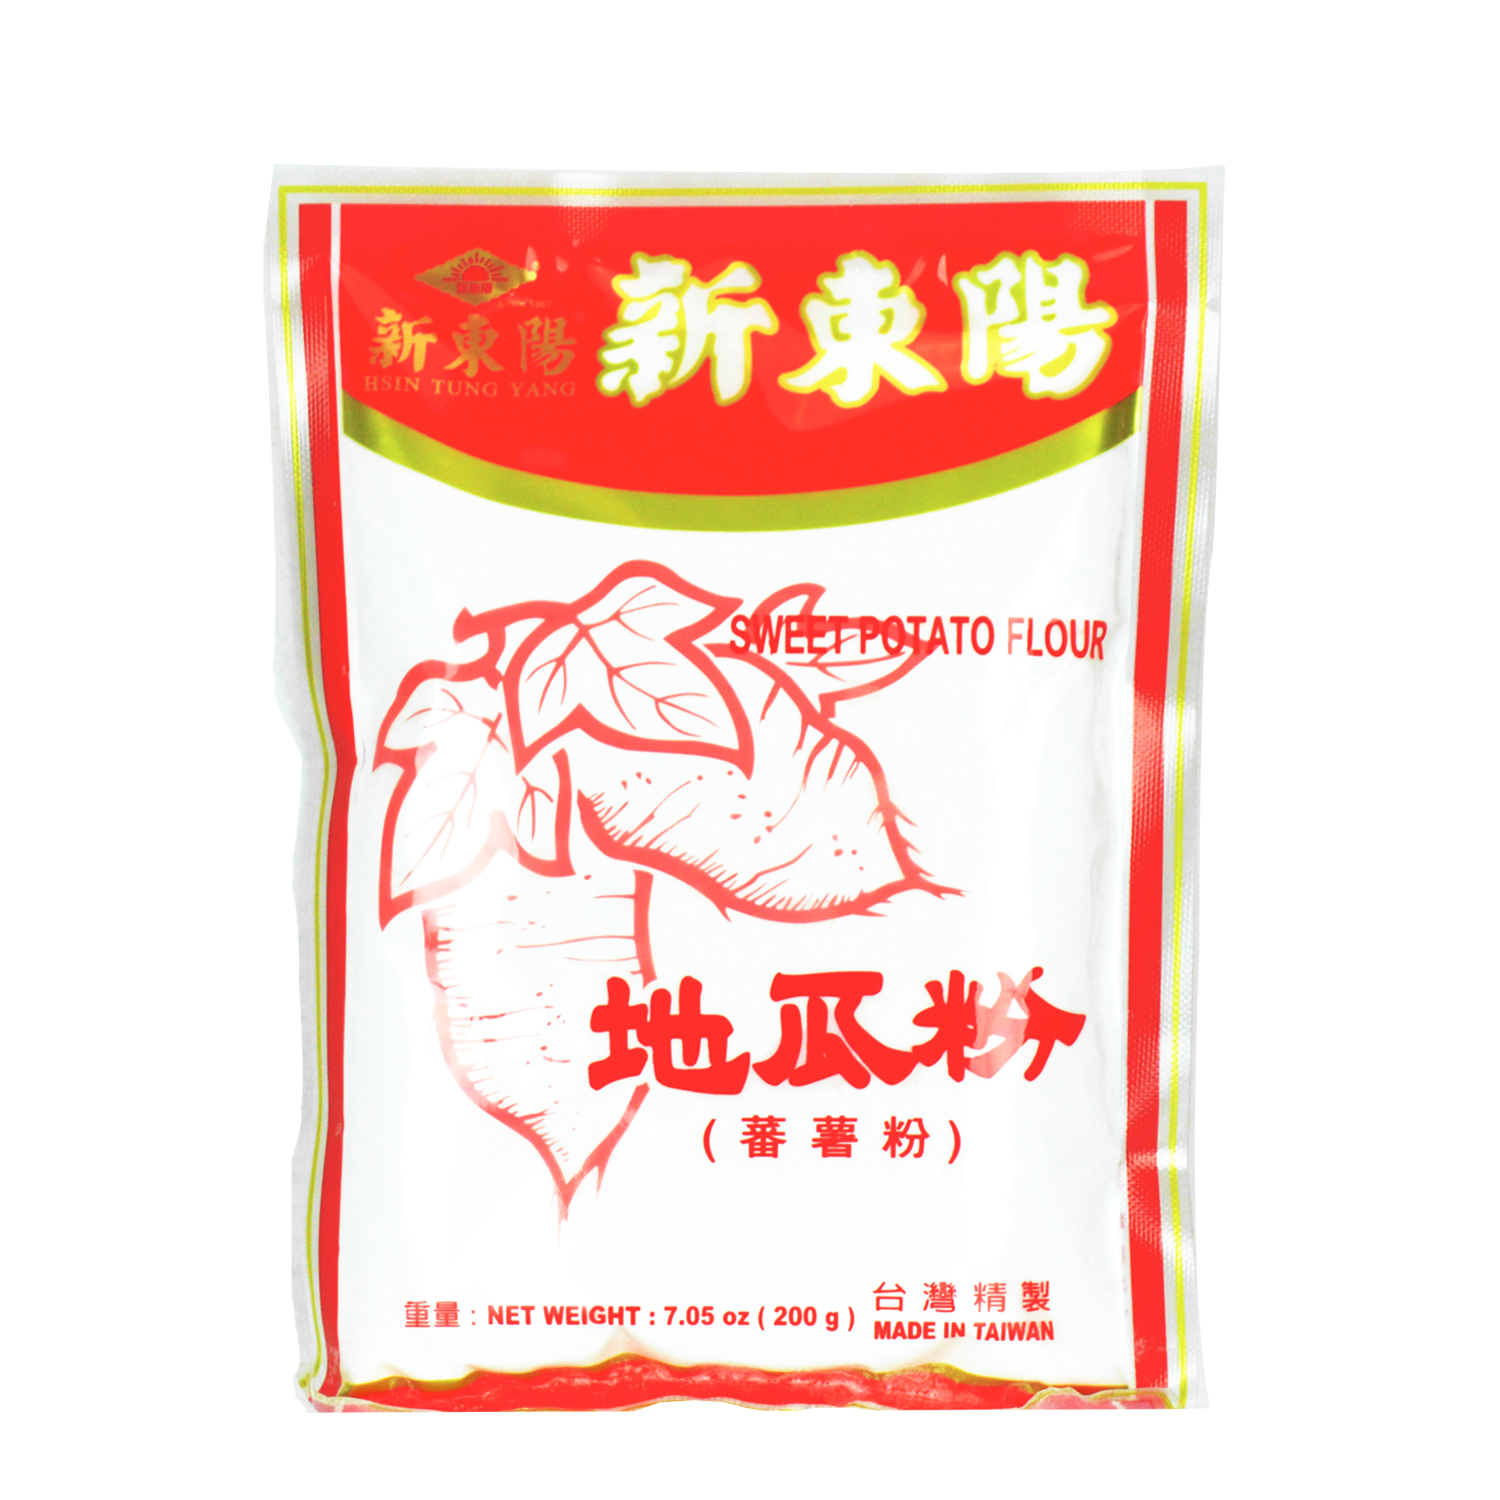 耆盛 地瓜粉 400g Chi Sheng Sweet Potato Starch 400g BB 2022.11.08 – Newfeel Kinabutik